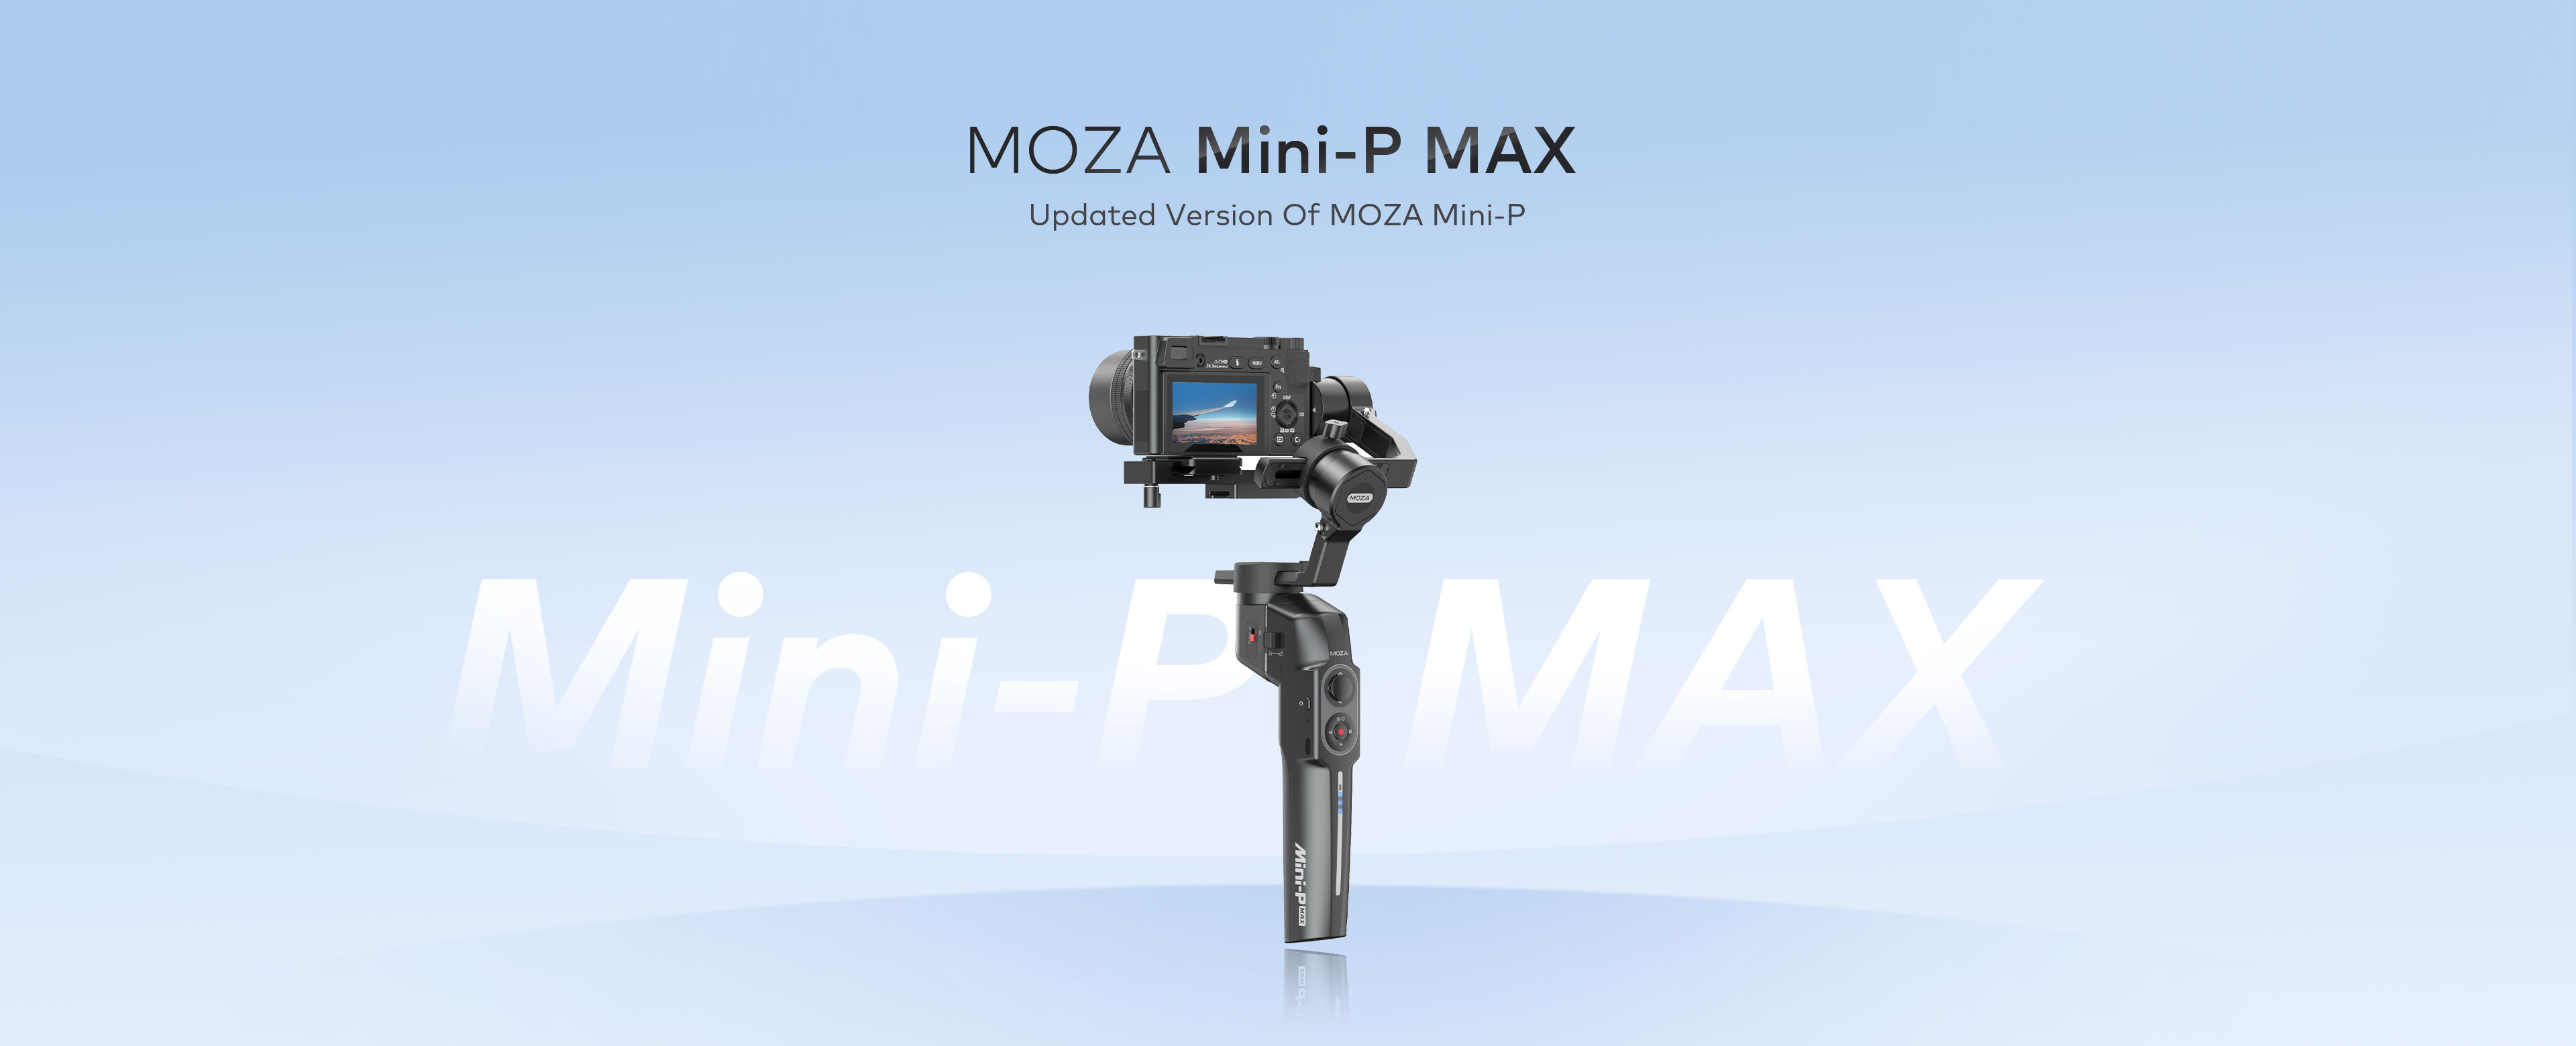 MOZA Mini-P MAX